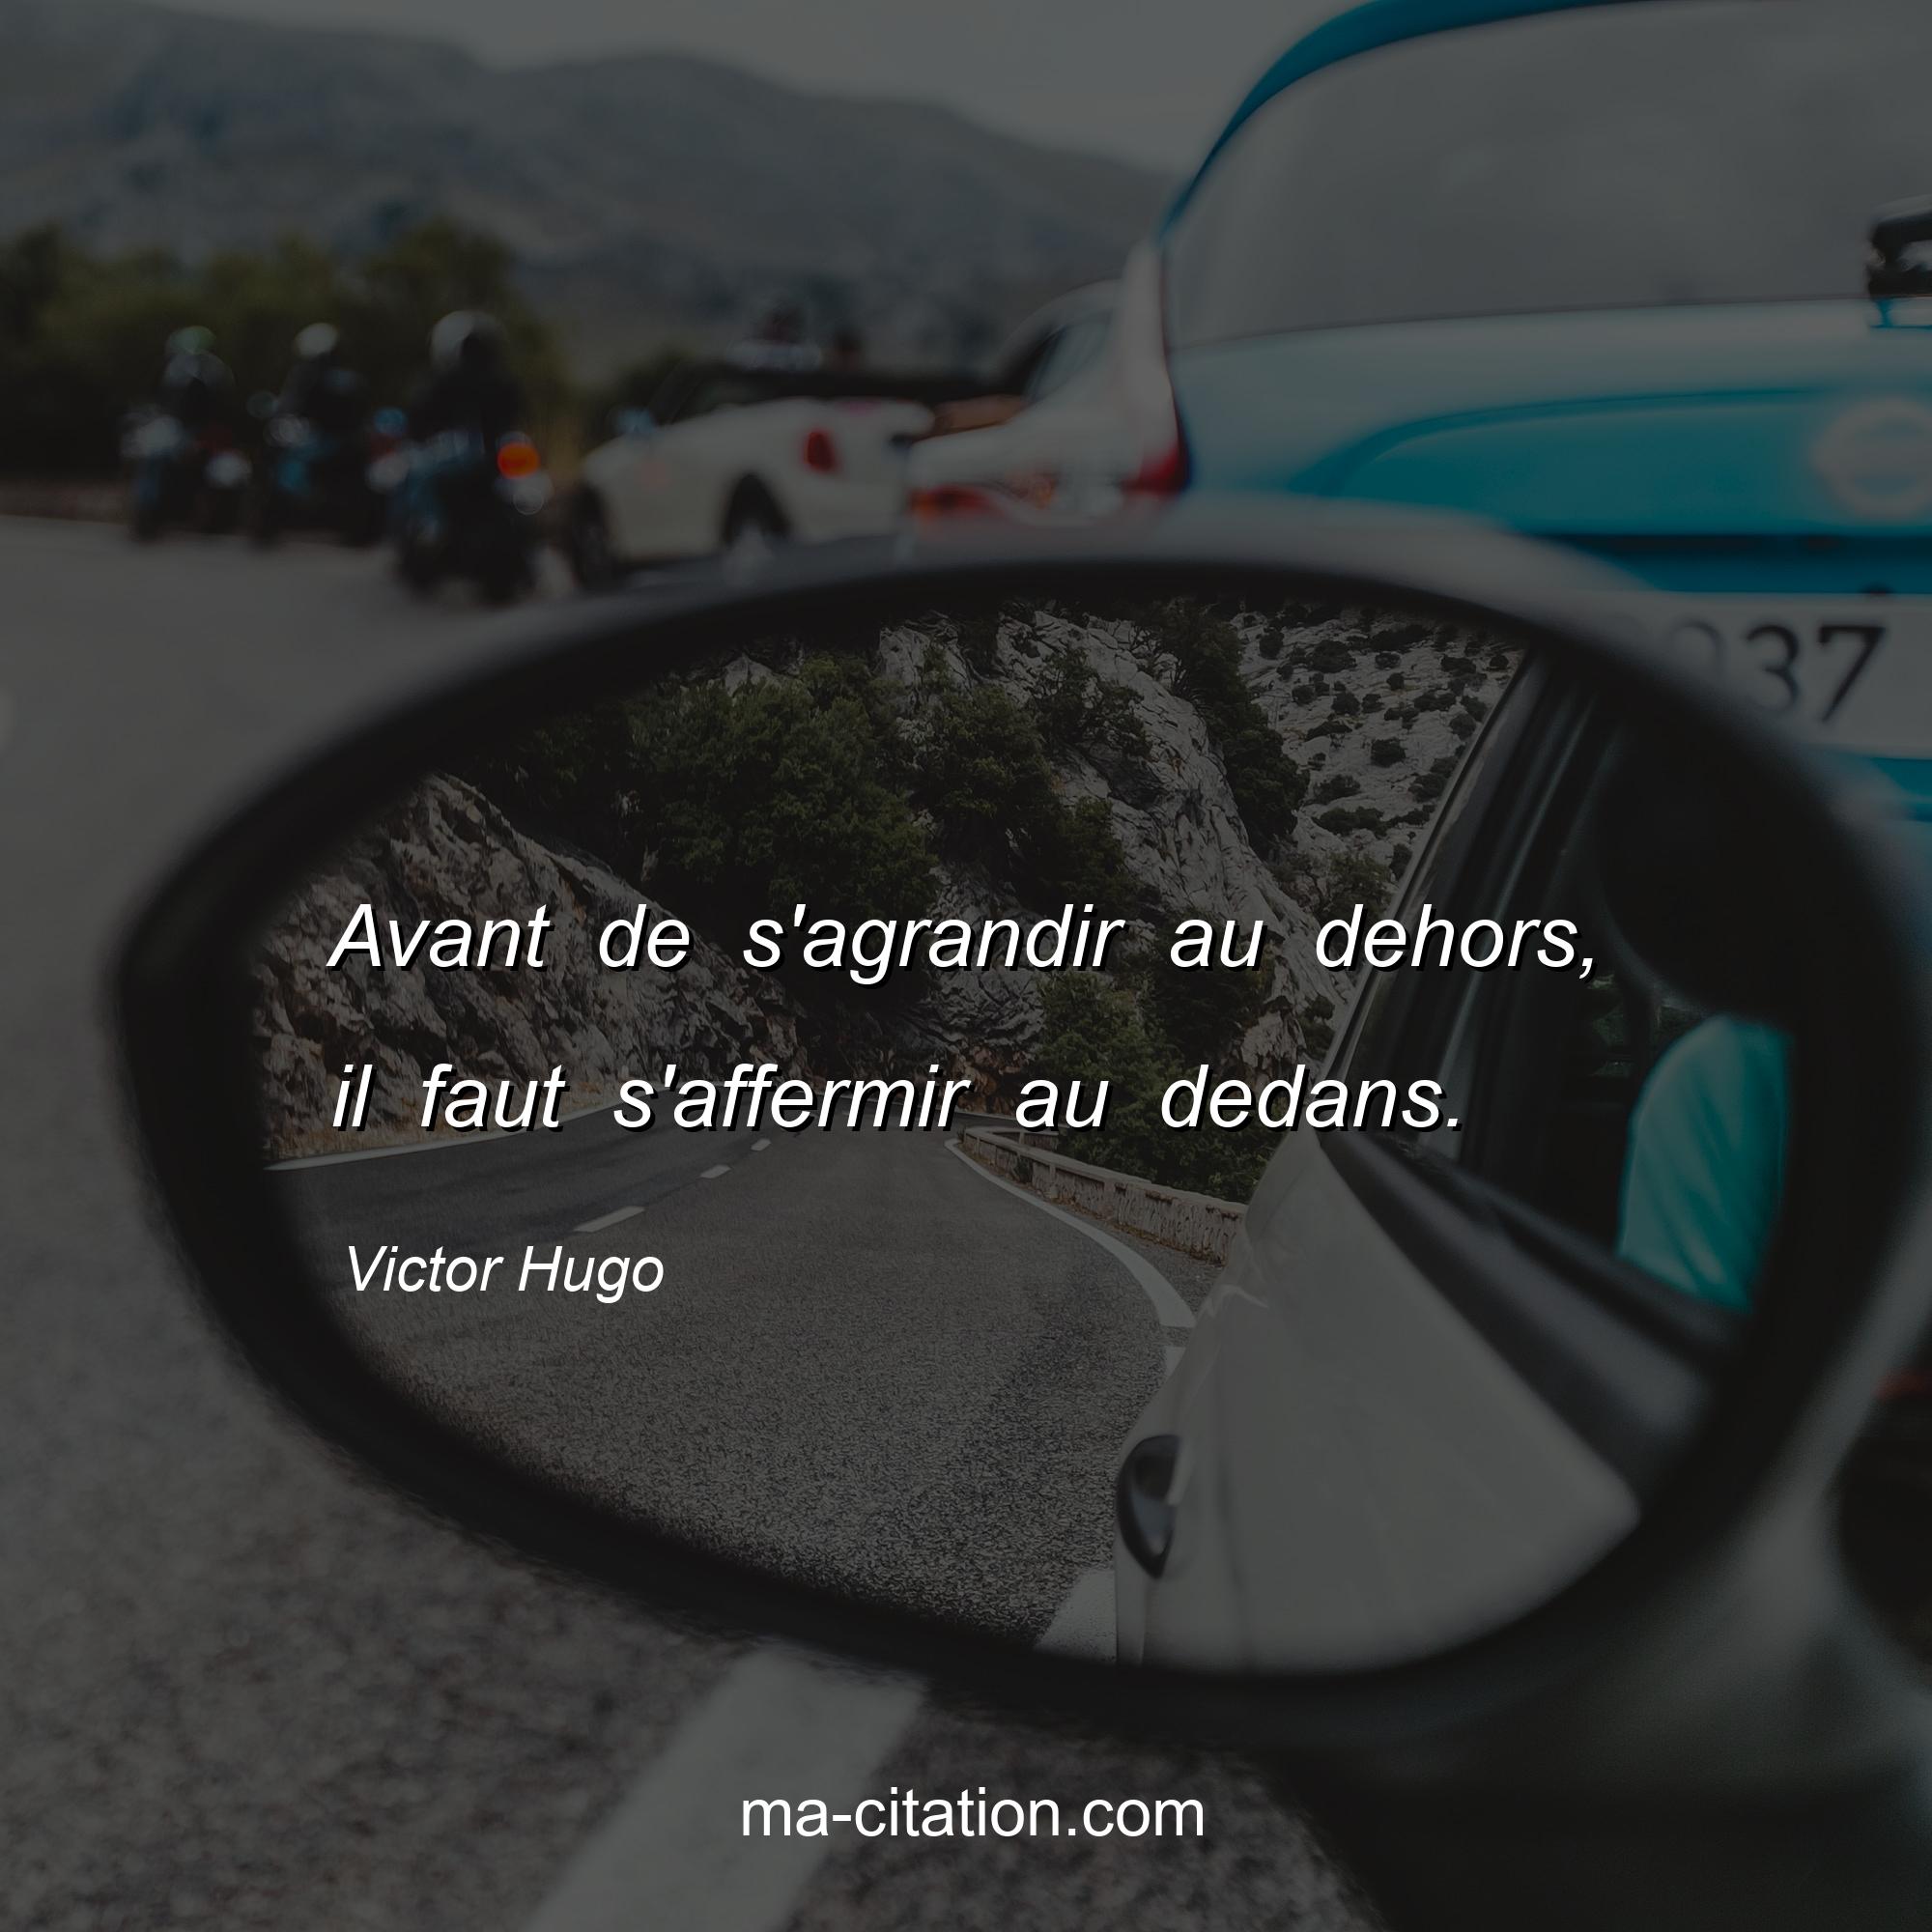 Victor Hugo : Avant de s'agrandir au dehors, il faut s'affermir au dedans.